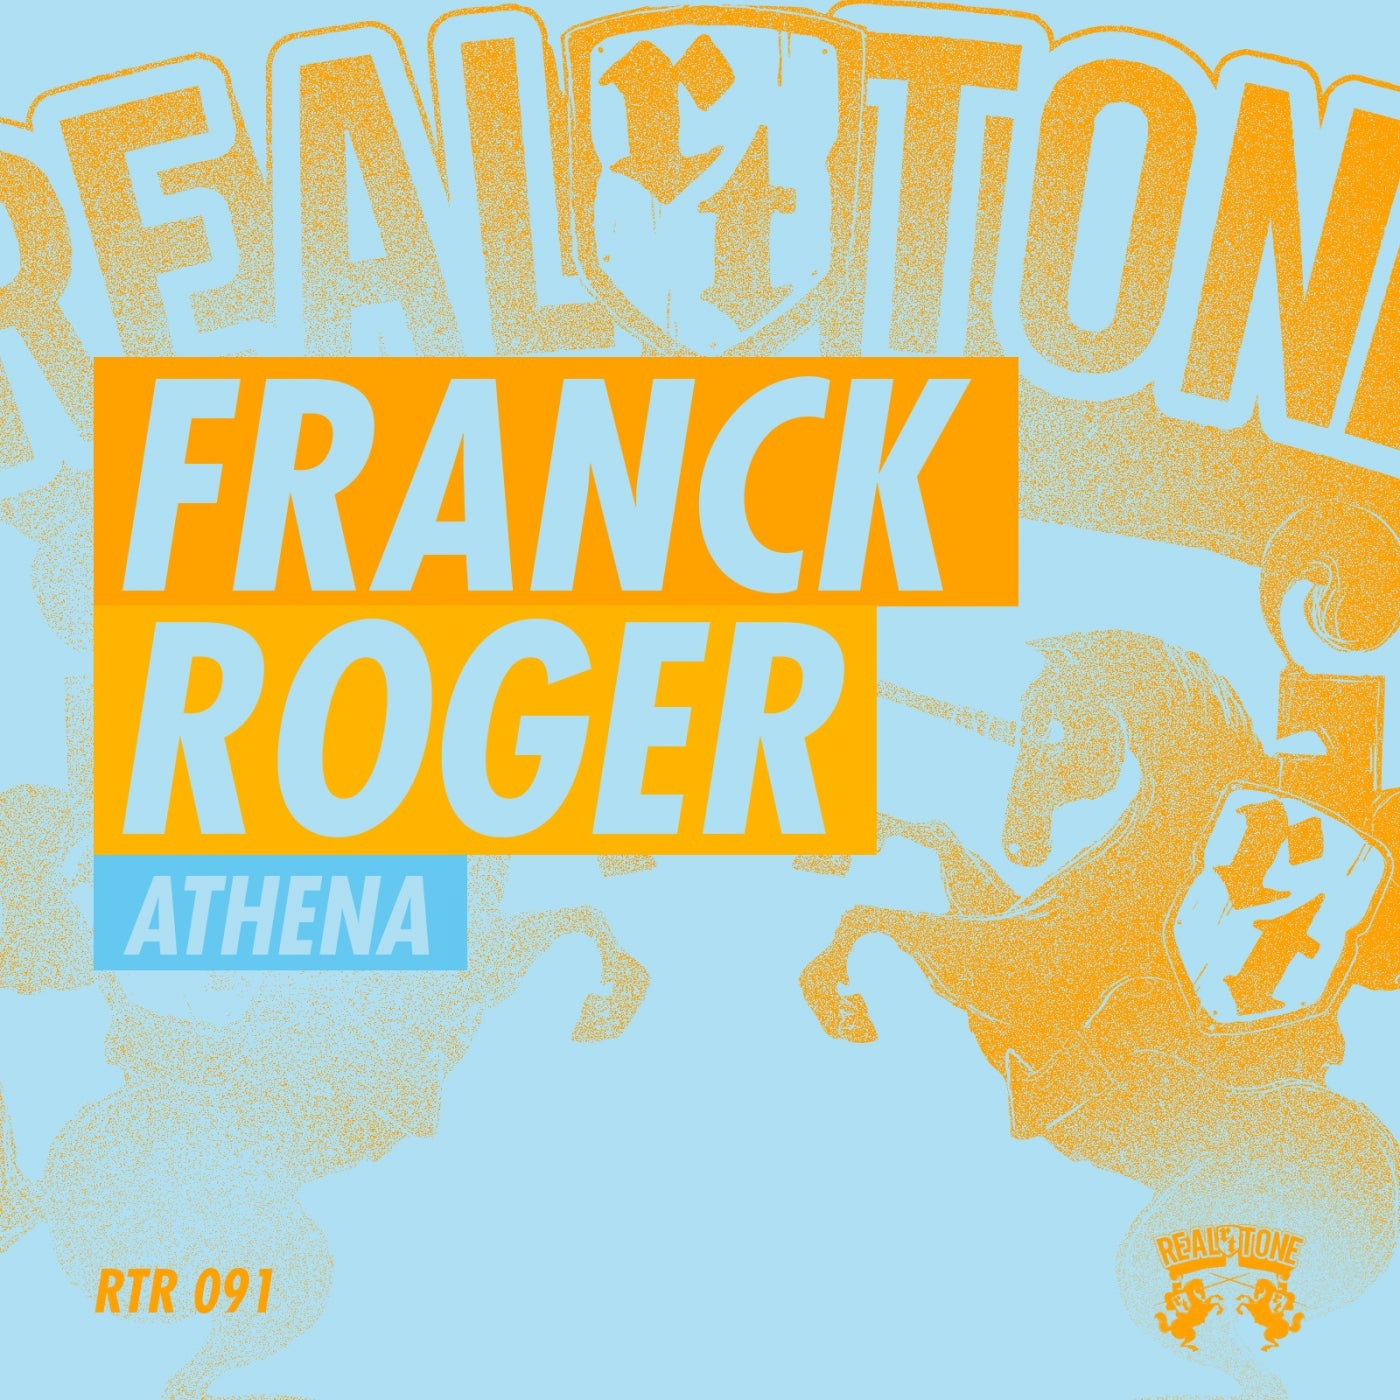 Franck Roger - Athena [RTR091]